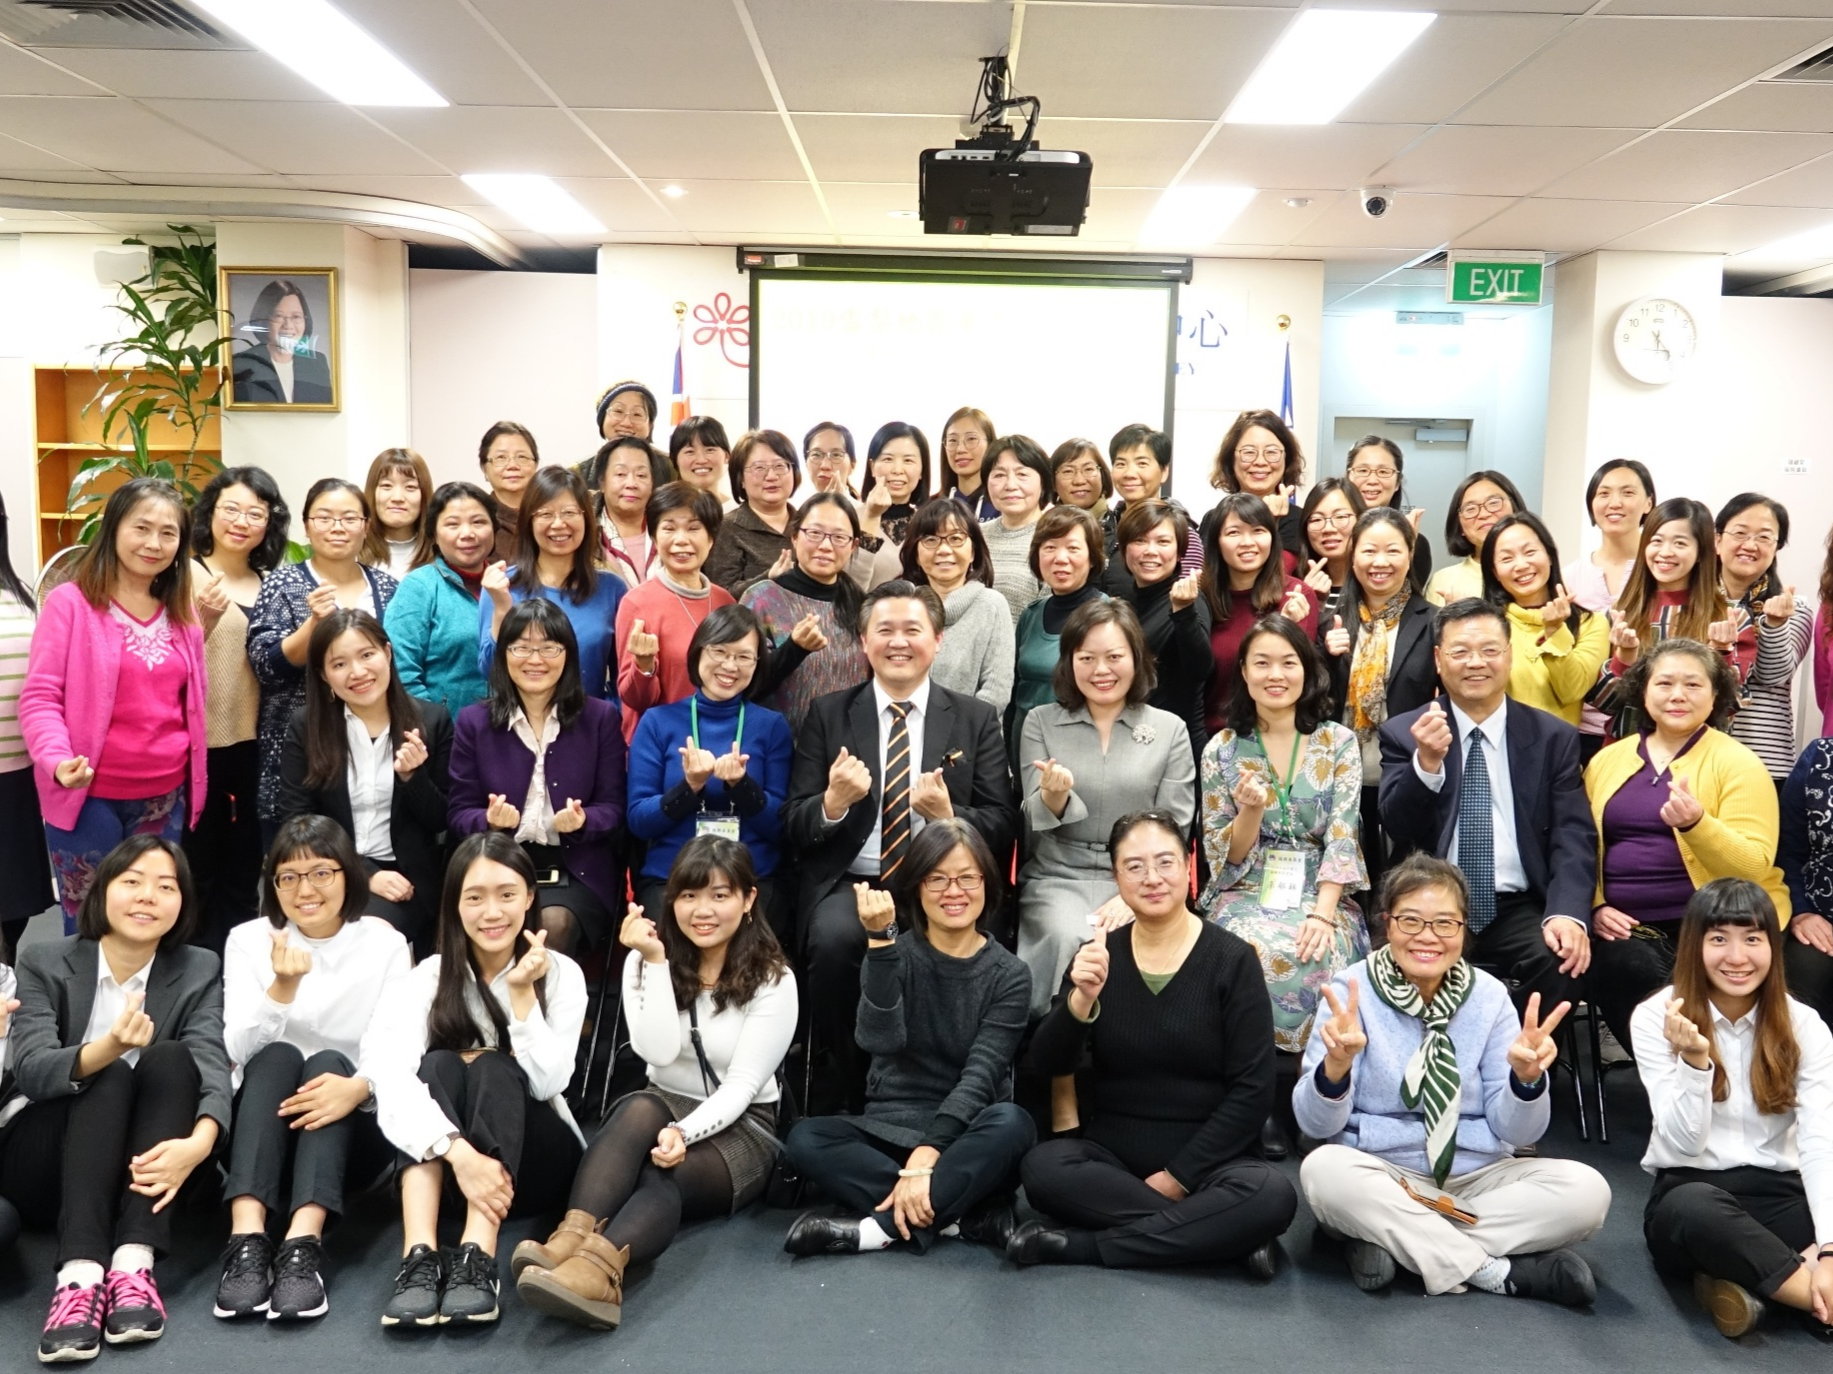 雪梨地區華文教師研習會 精進教學新知圖片